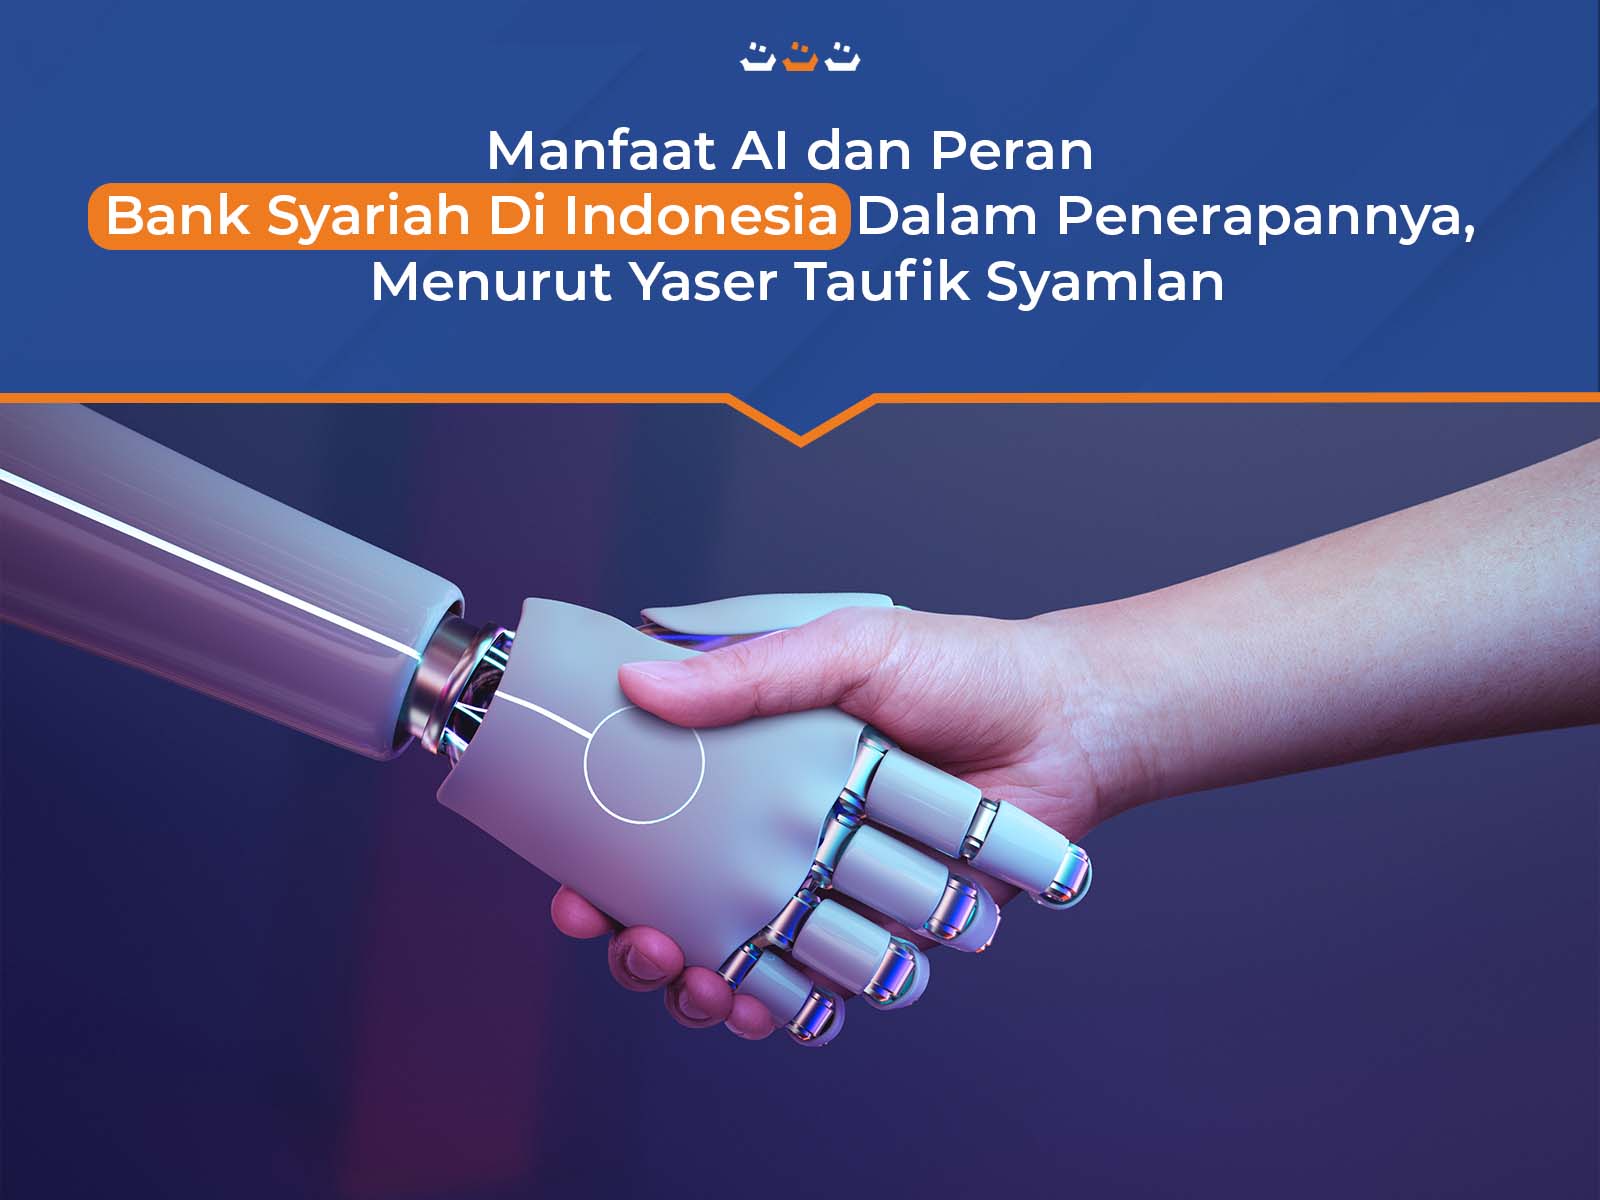 Manfaat AI dan Peran Bank Syariah Di Indonesia Dalam Penerapannya, Menurut Yaser Taufik Syamlan